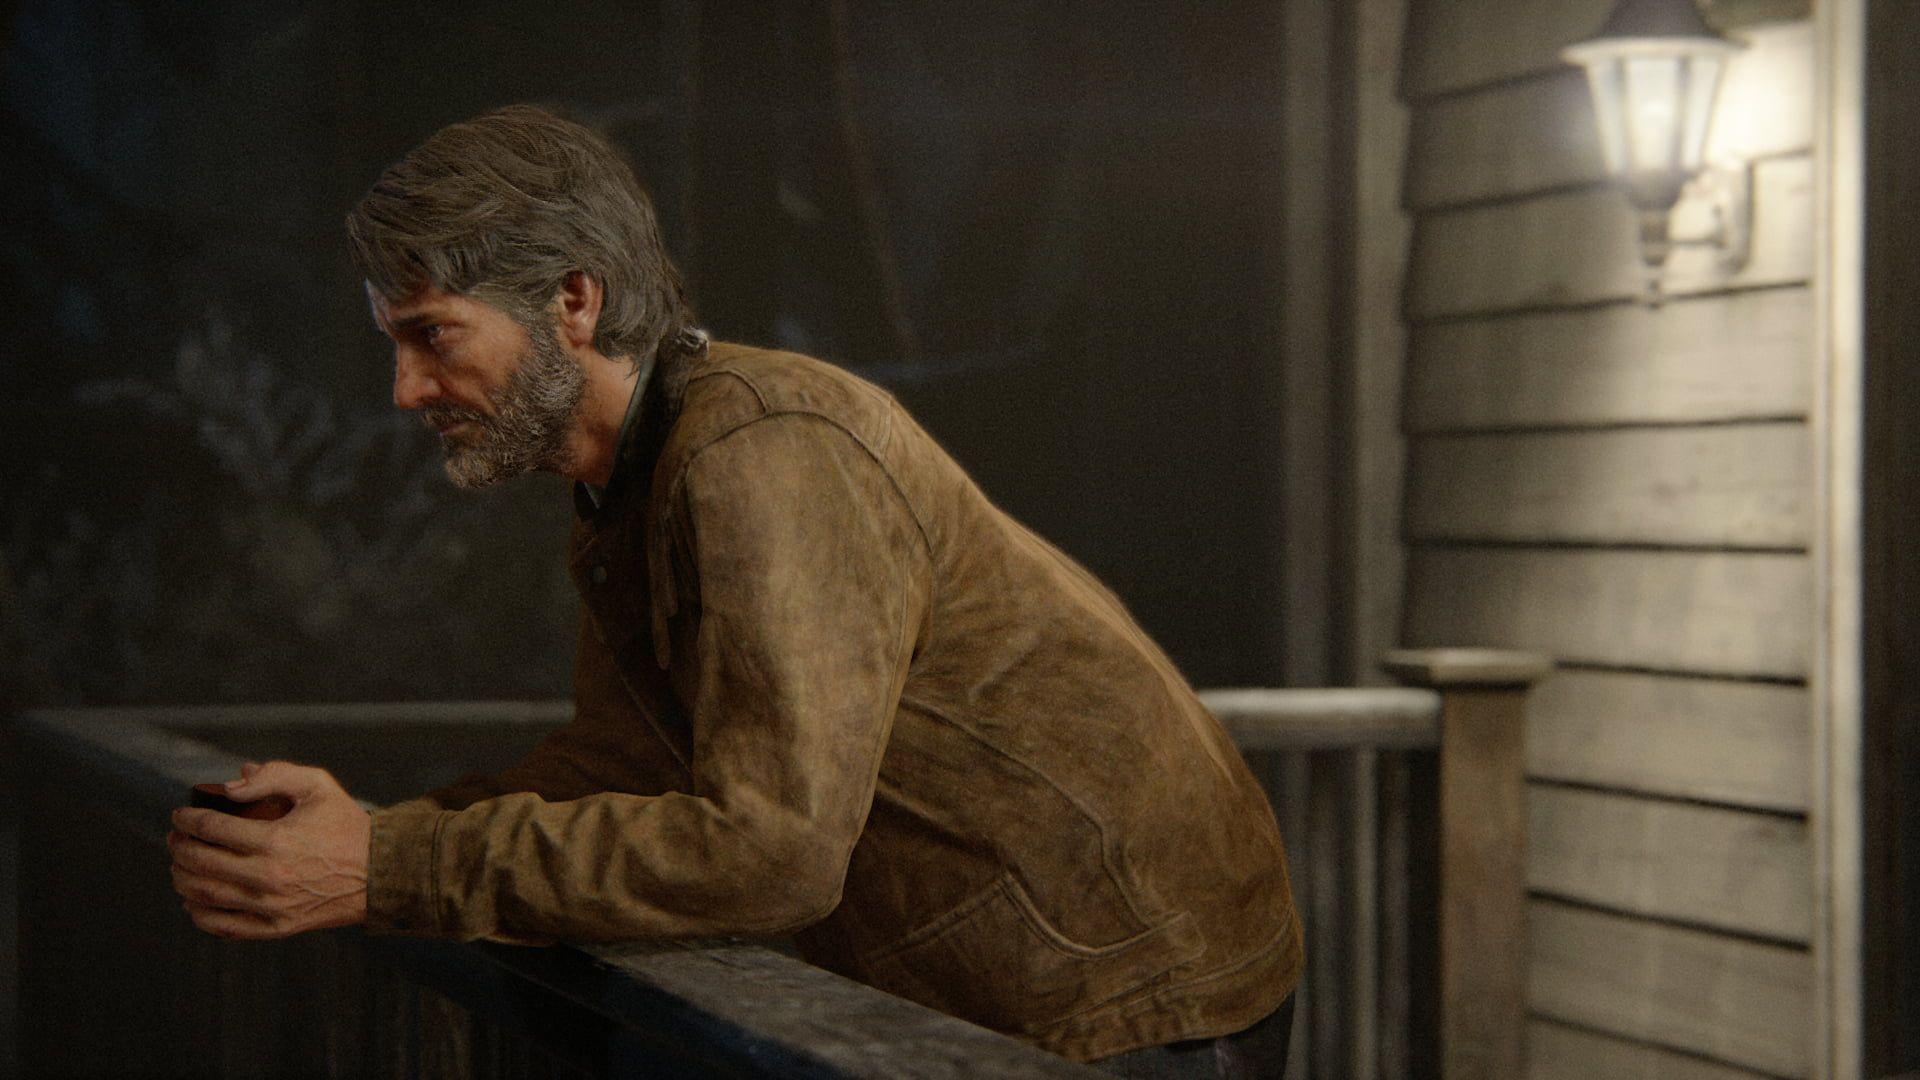 The Last of Us Series Joel Ellie 4K Wallpaper iPhone HD Phone #6230h